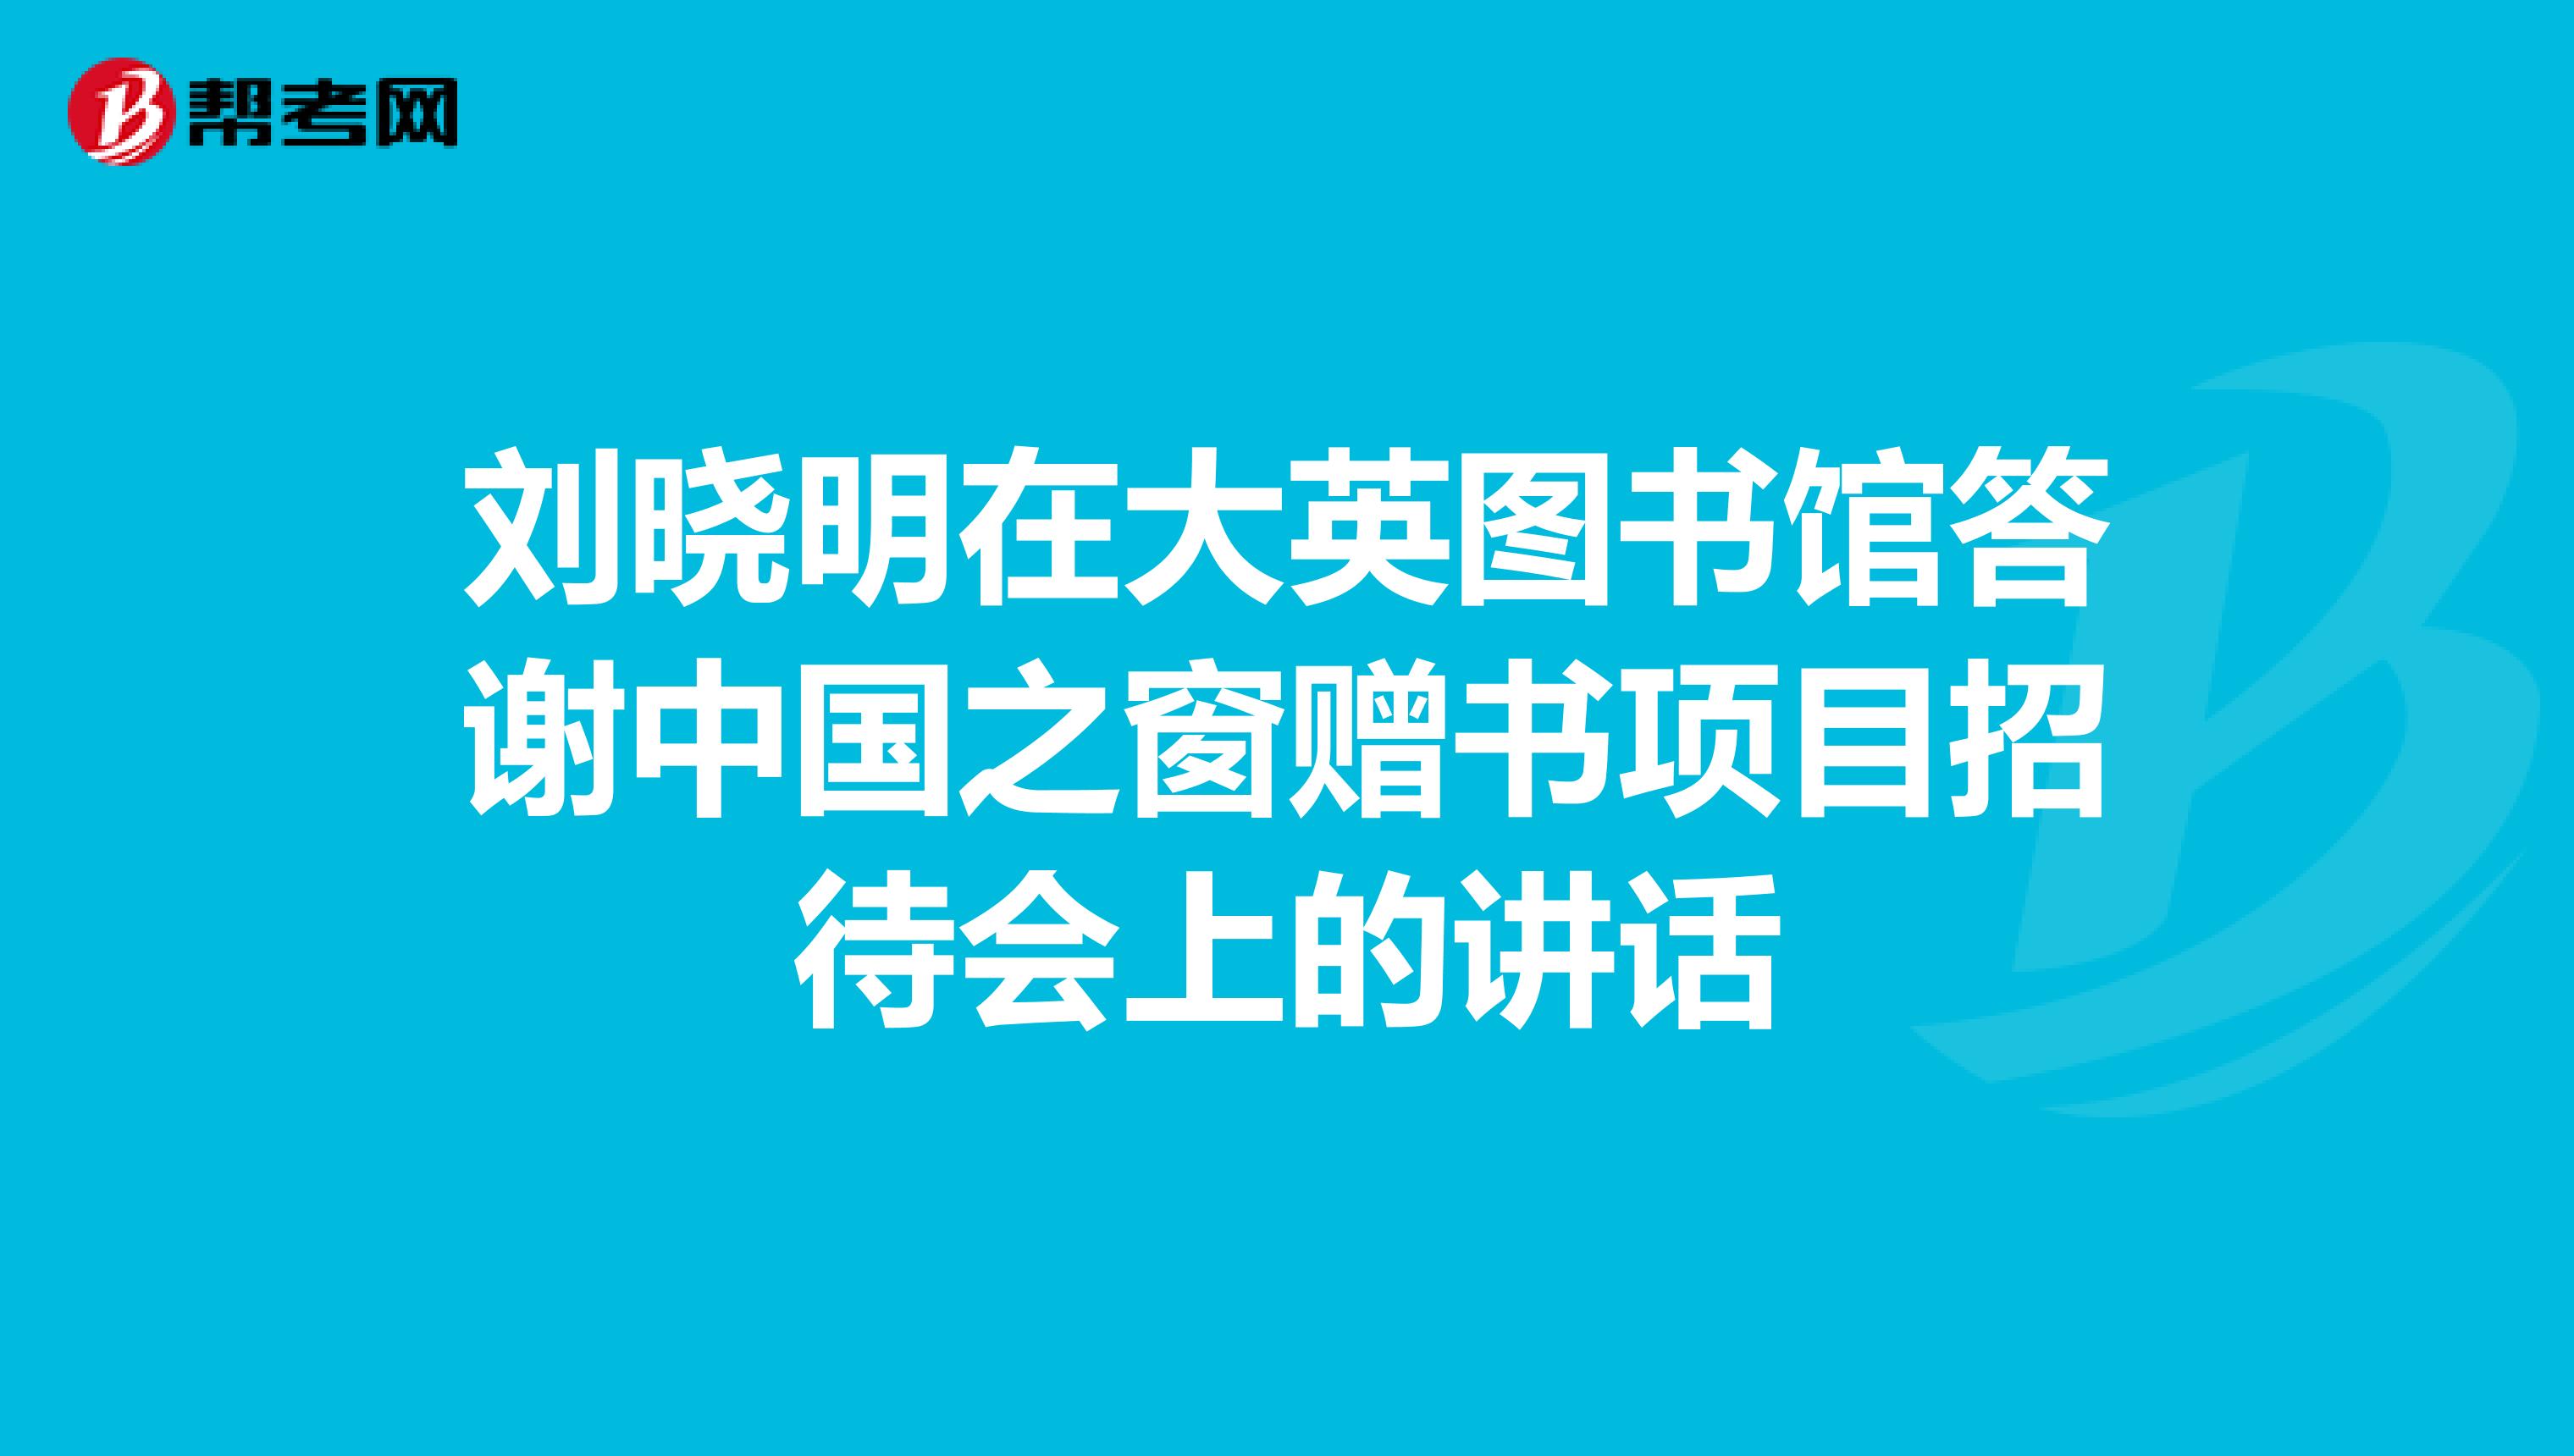 刘晓明在大英图书馆答谢中国之窗赠书项目招待会上的讲话